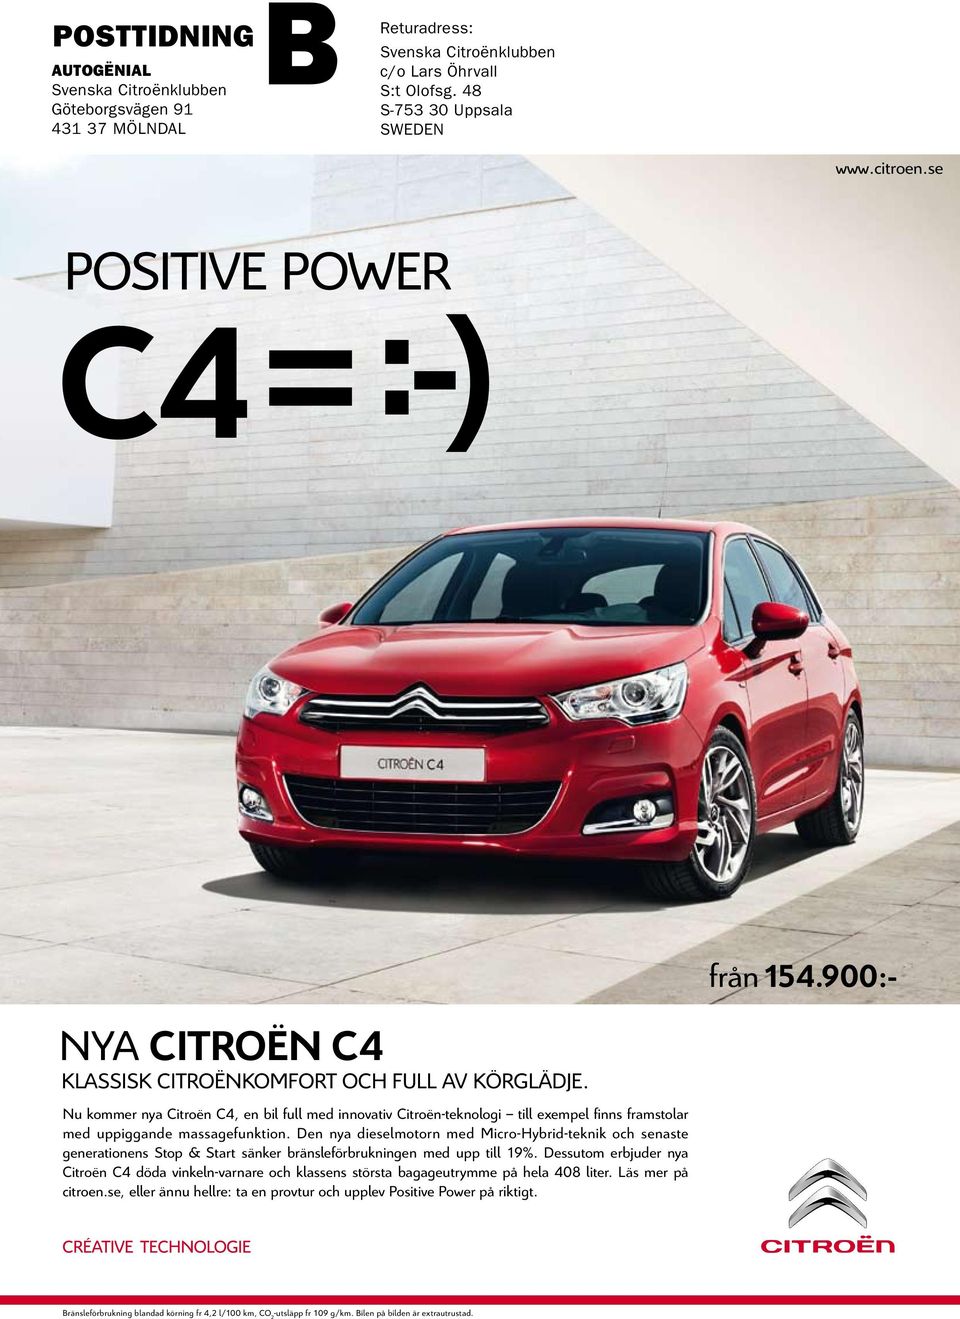 C4 = :-) Med den gashydrauliska fjädringen Hydractive III och det intelligenta antispinnsystemet ITC har Citroën C5 en väghållning som måste upplevas. Gärna i riktigt dåligt väglag.